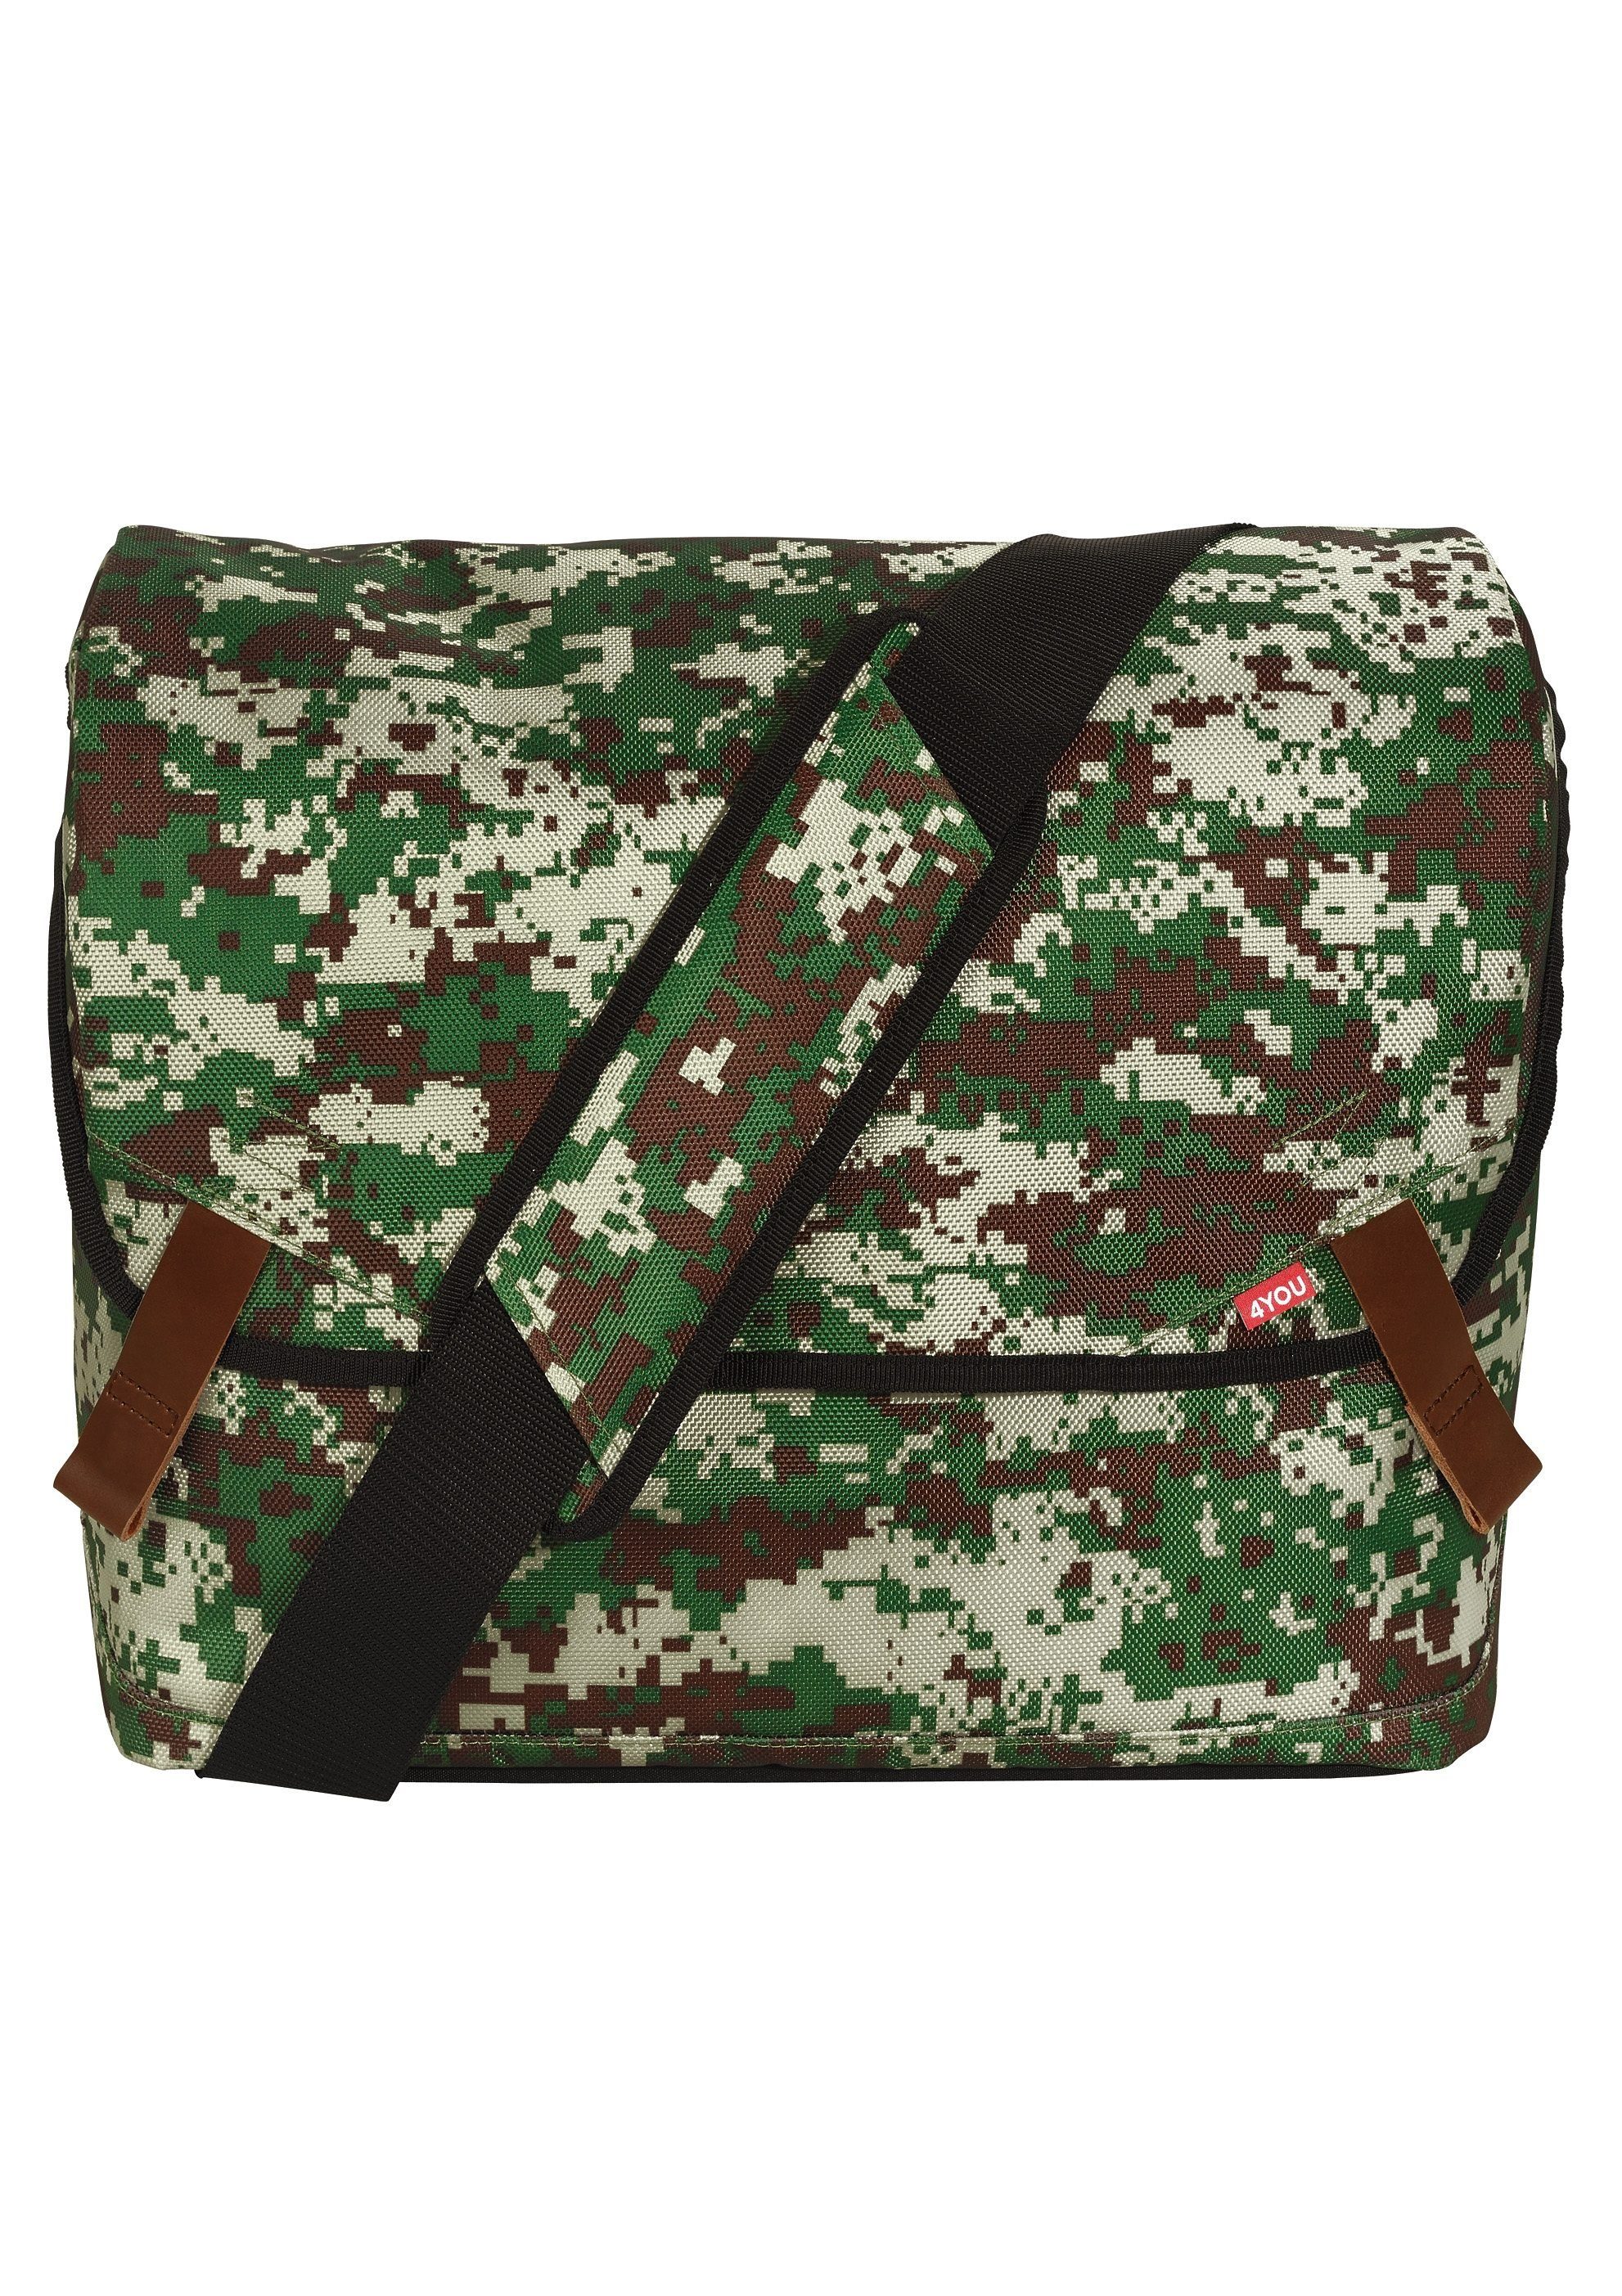 4YOU Umhängetasche Messengerbag, Camouflage, mit Laptopfach